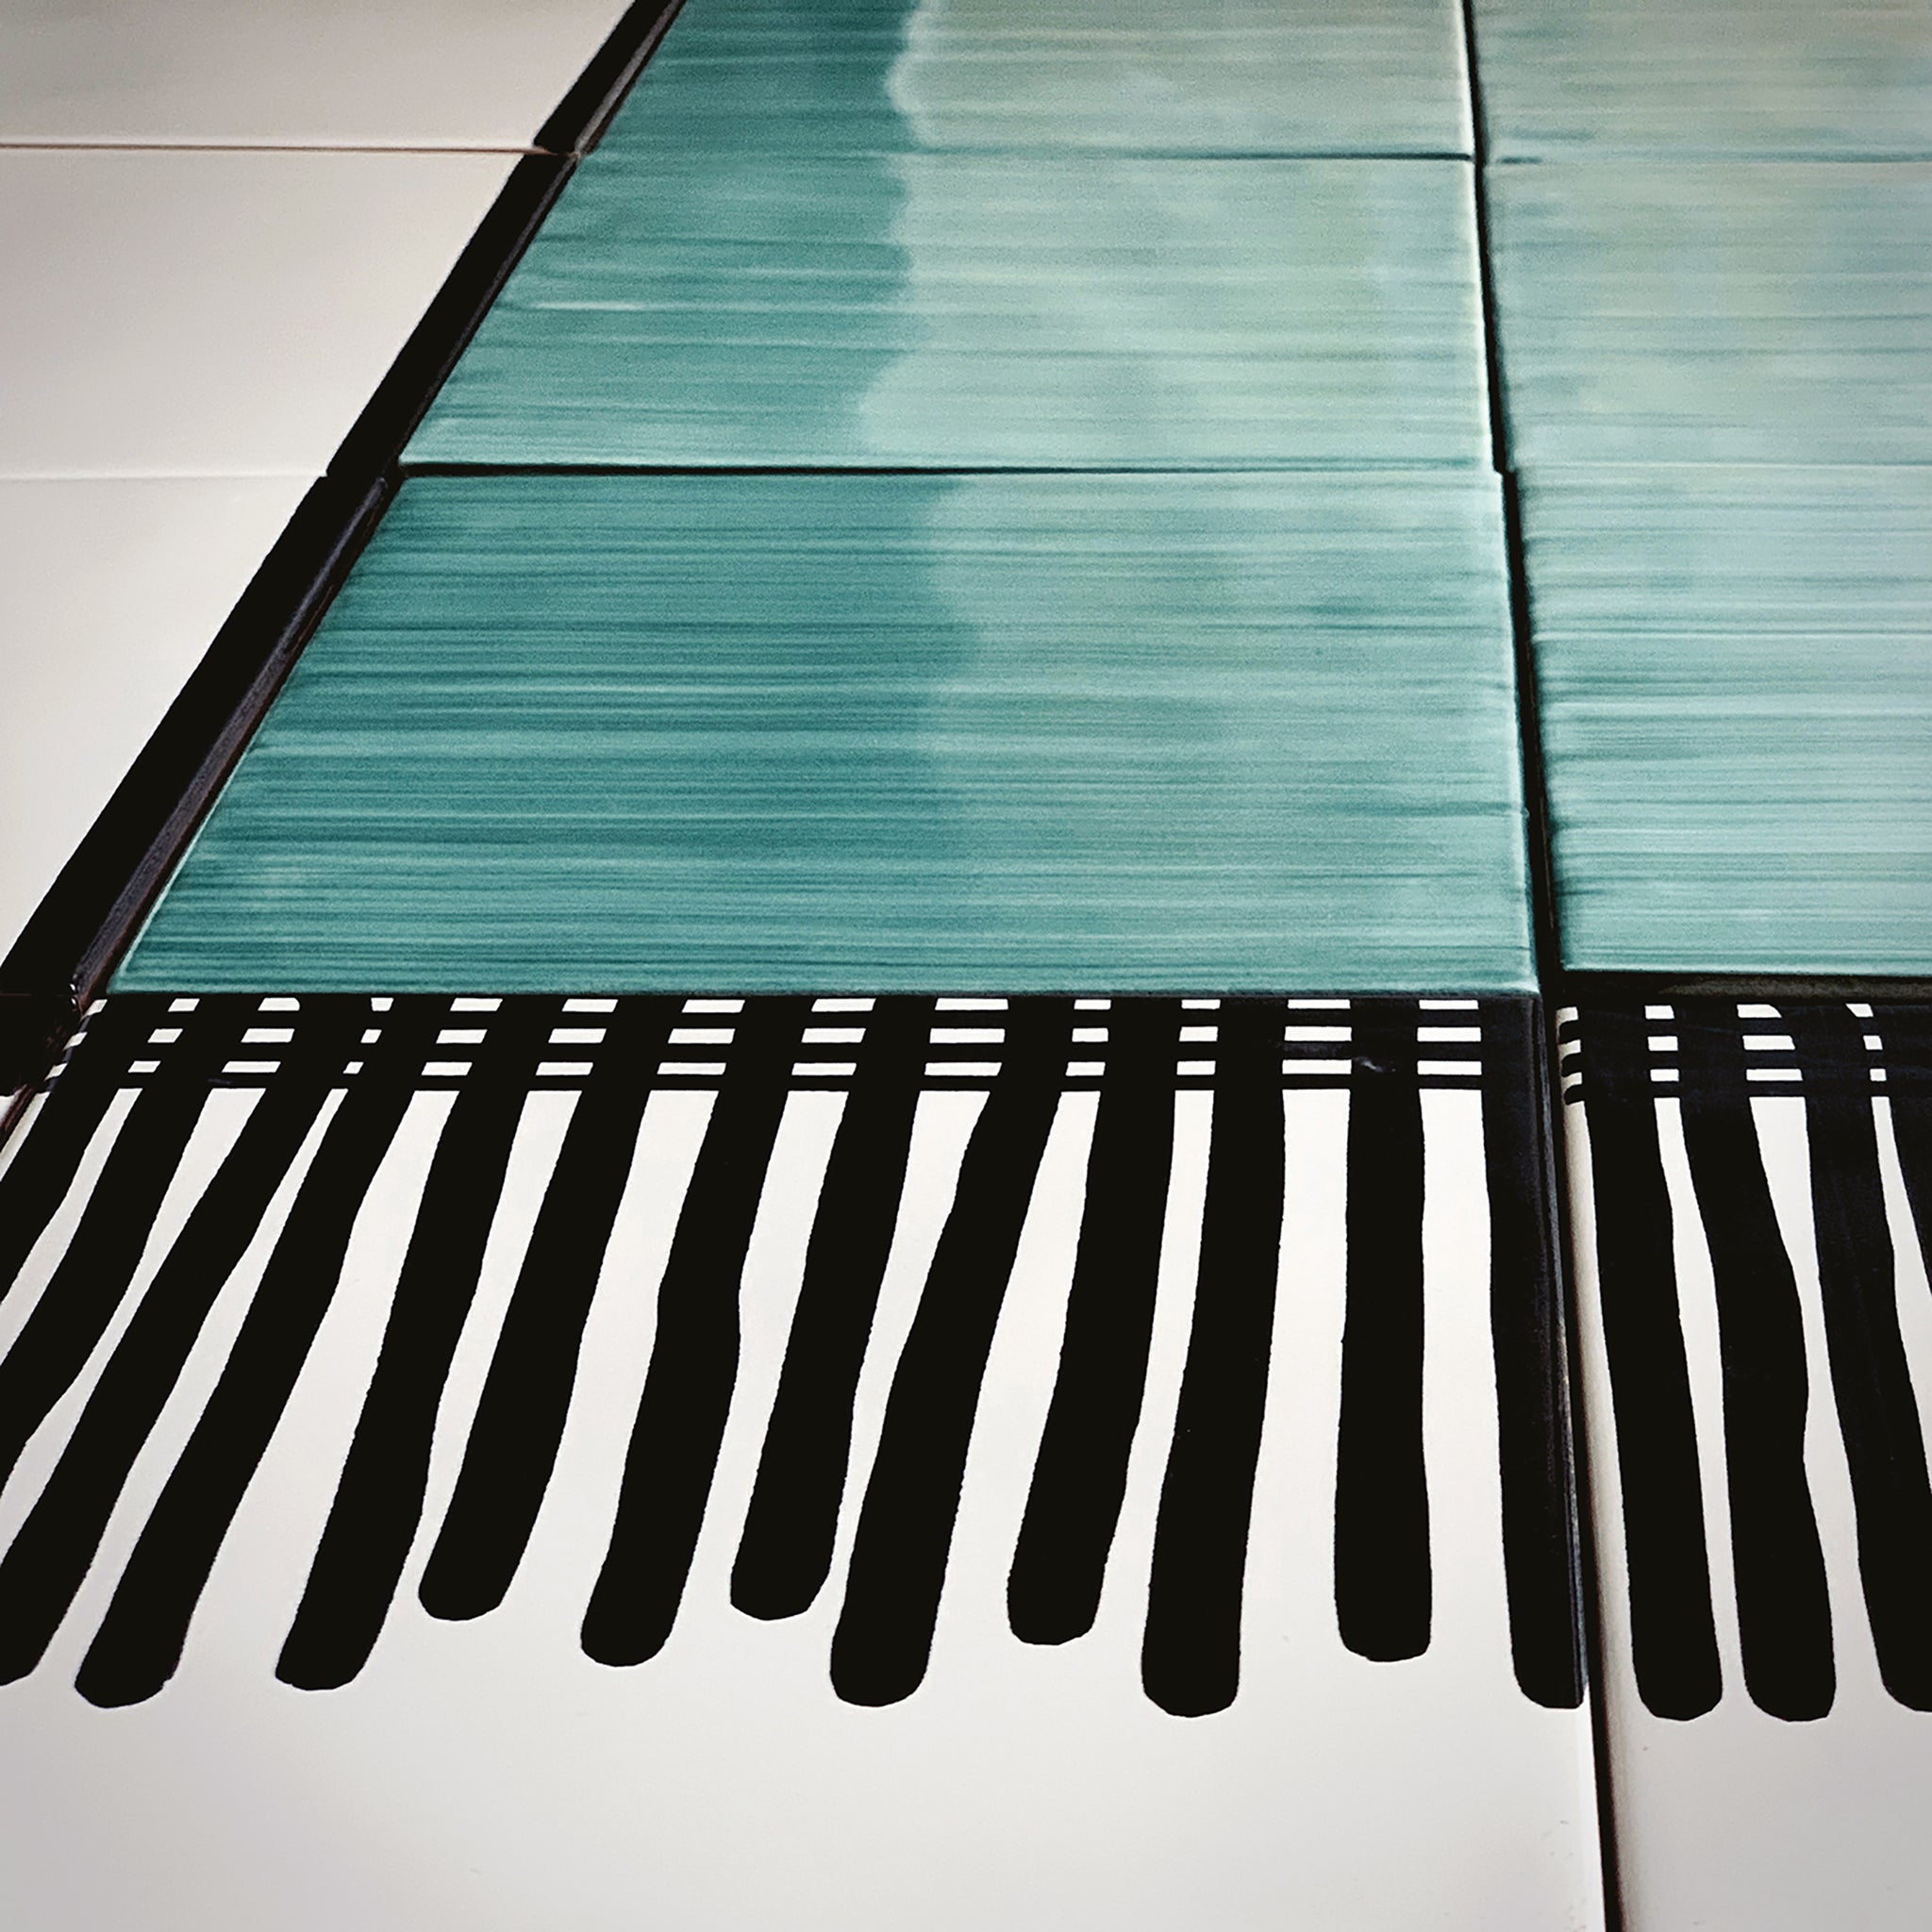 Carpet Green and Black & White Ceramic Composition by Giuliano Andrea dell’Uva 160 x 80 - Alternative view 3